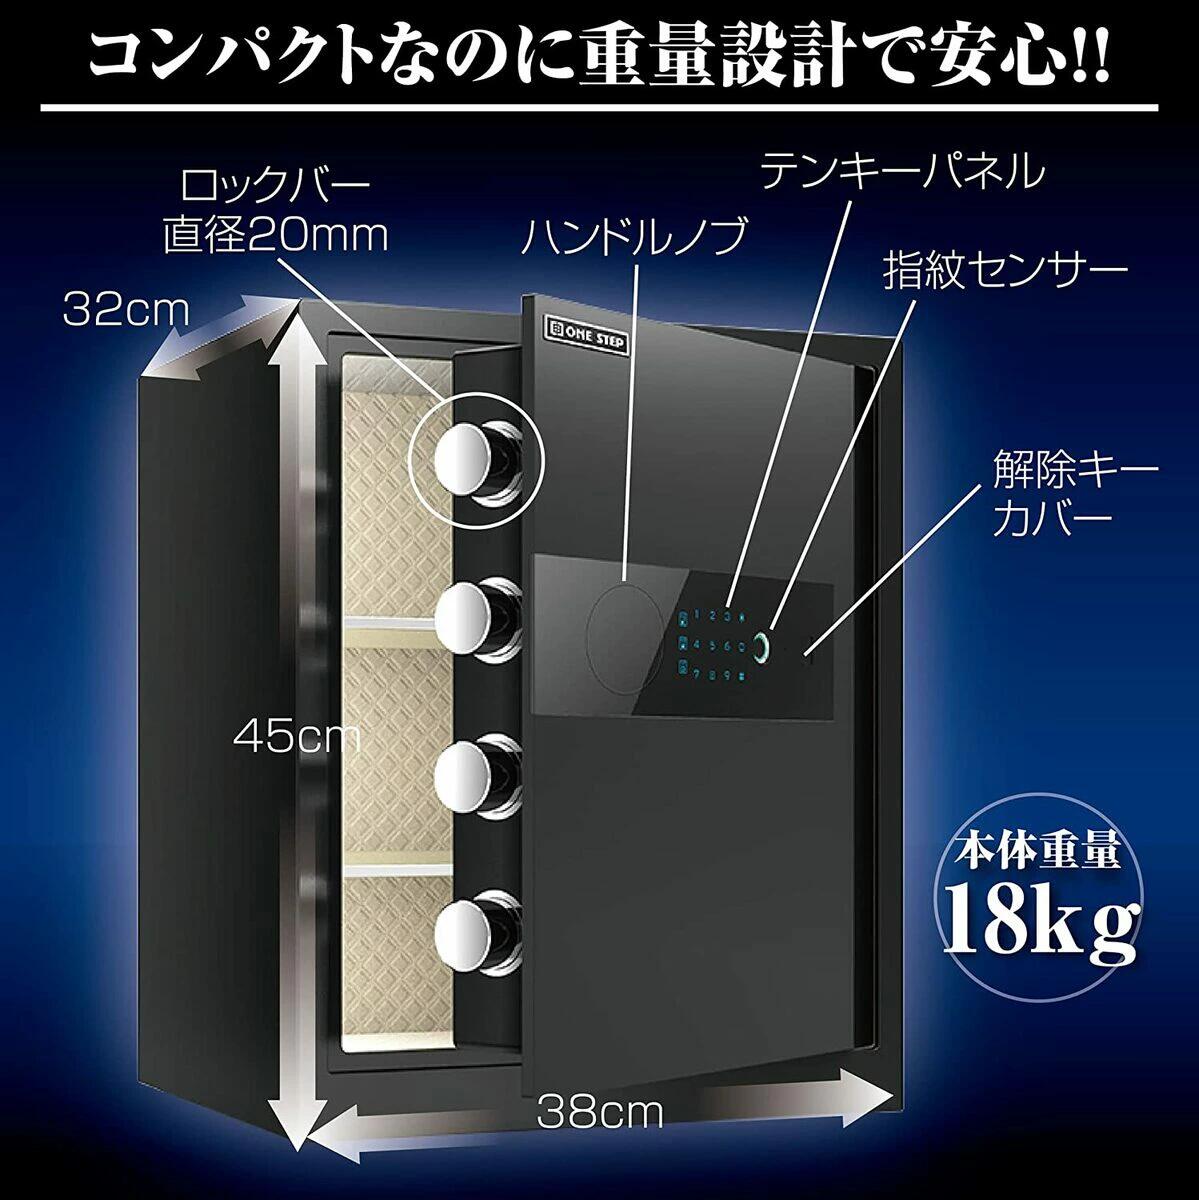 直販激安 電子金庫 タッチパネル (60cm, 白) 指紋認証 アラーム機能